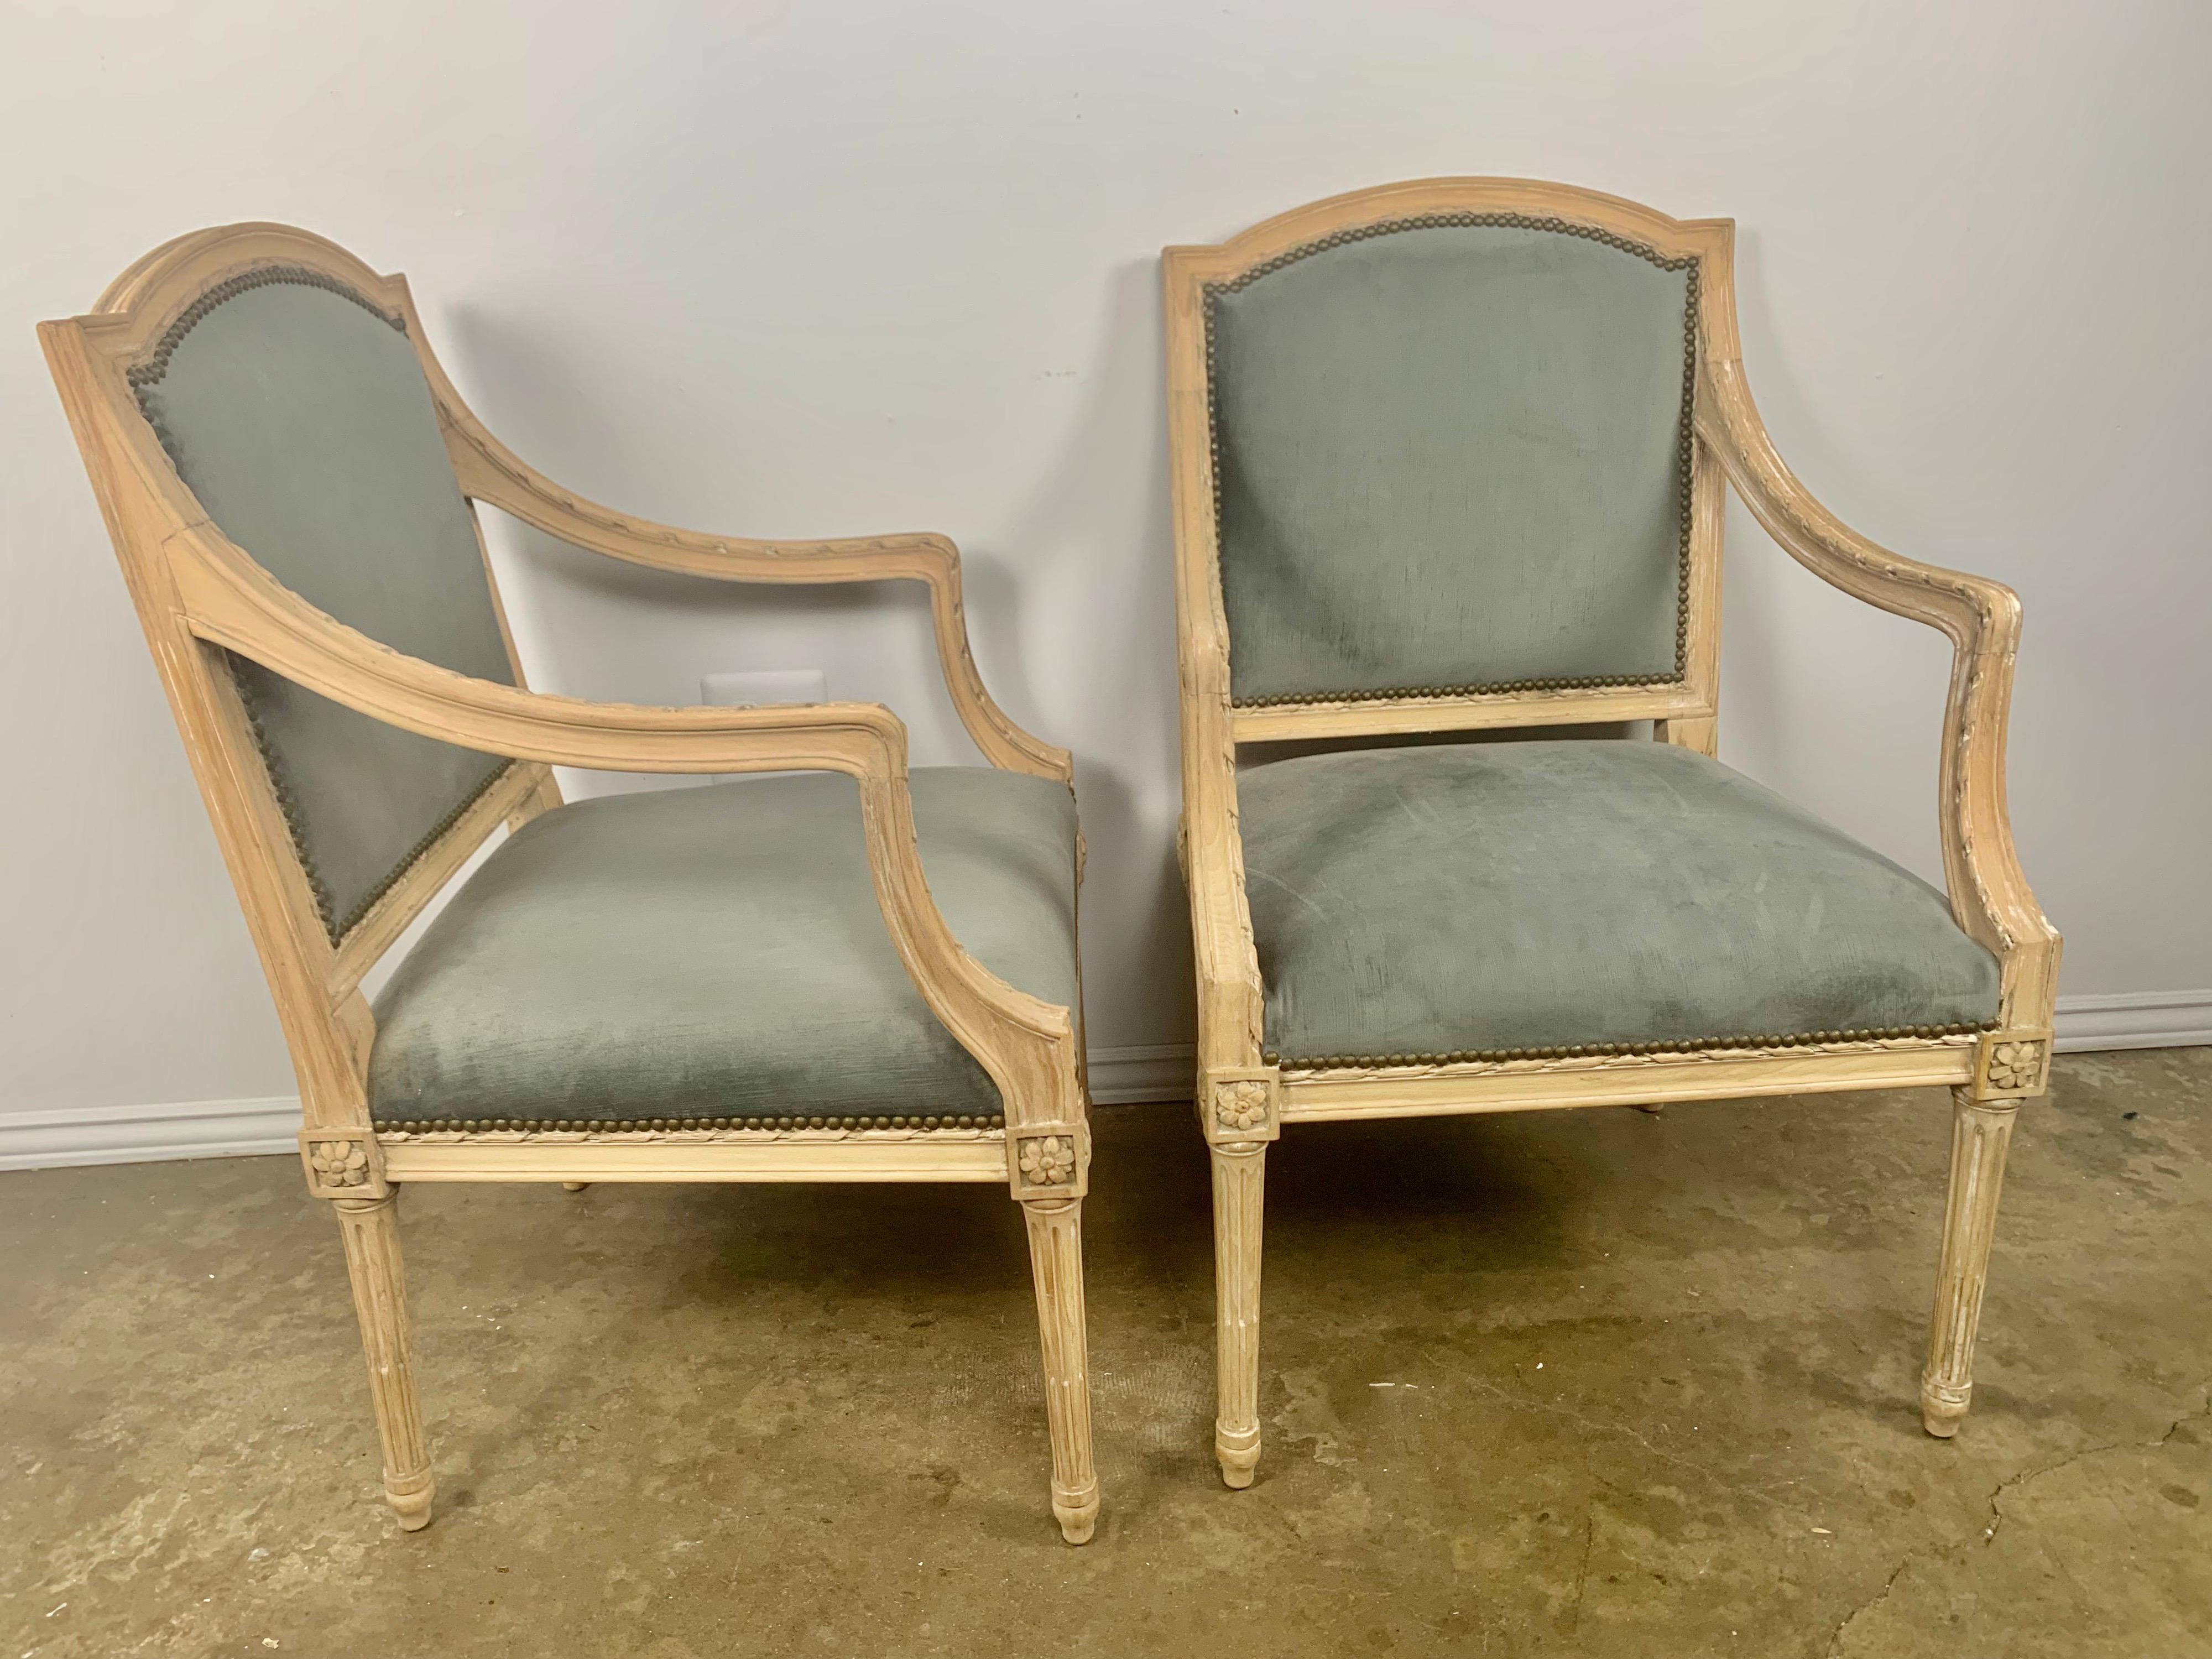 Ein Paar französische Sessel im Louis-XVI-Stil, die auf vier geraden, kannelierten Beinen stehen. Die Stühle wurden gebleicht und neu lackiert. Die Sessel sind auch neu mit einem stahlblauen Samt bezogen und sind einsatzbereit. Abmessungen: 19